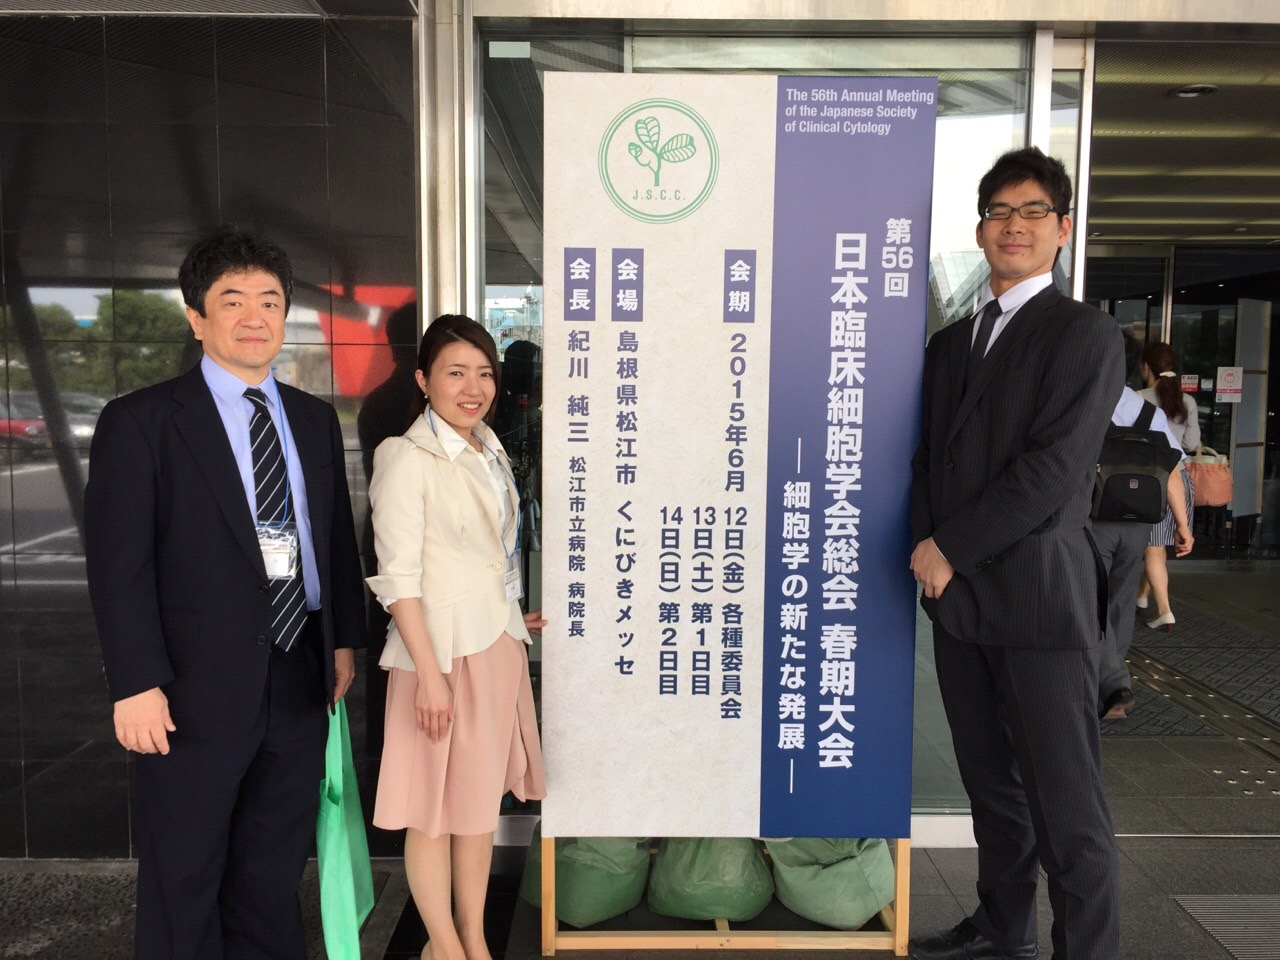 第56回 日本臨床細胞学会総会が開催されました。